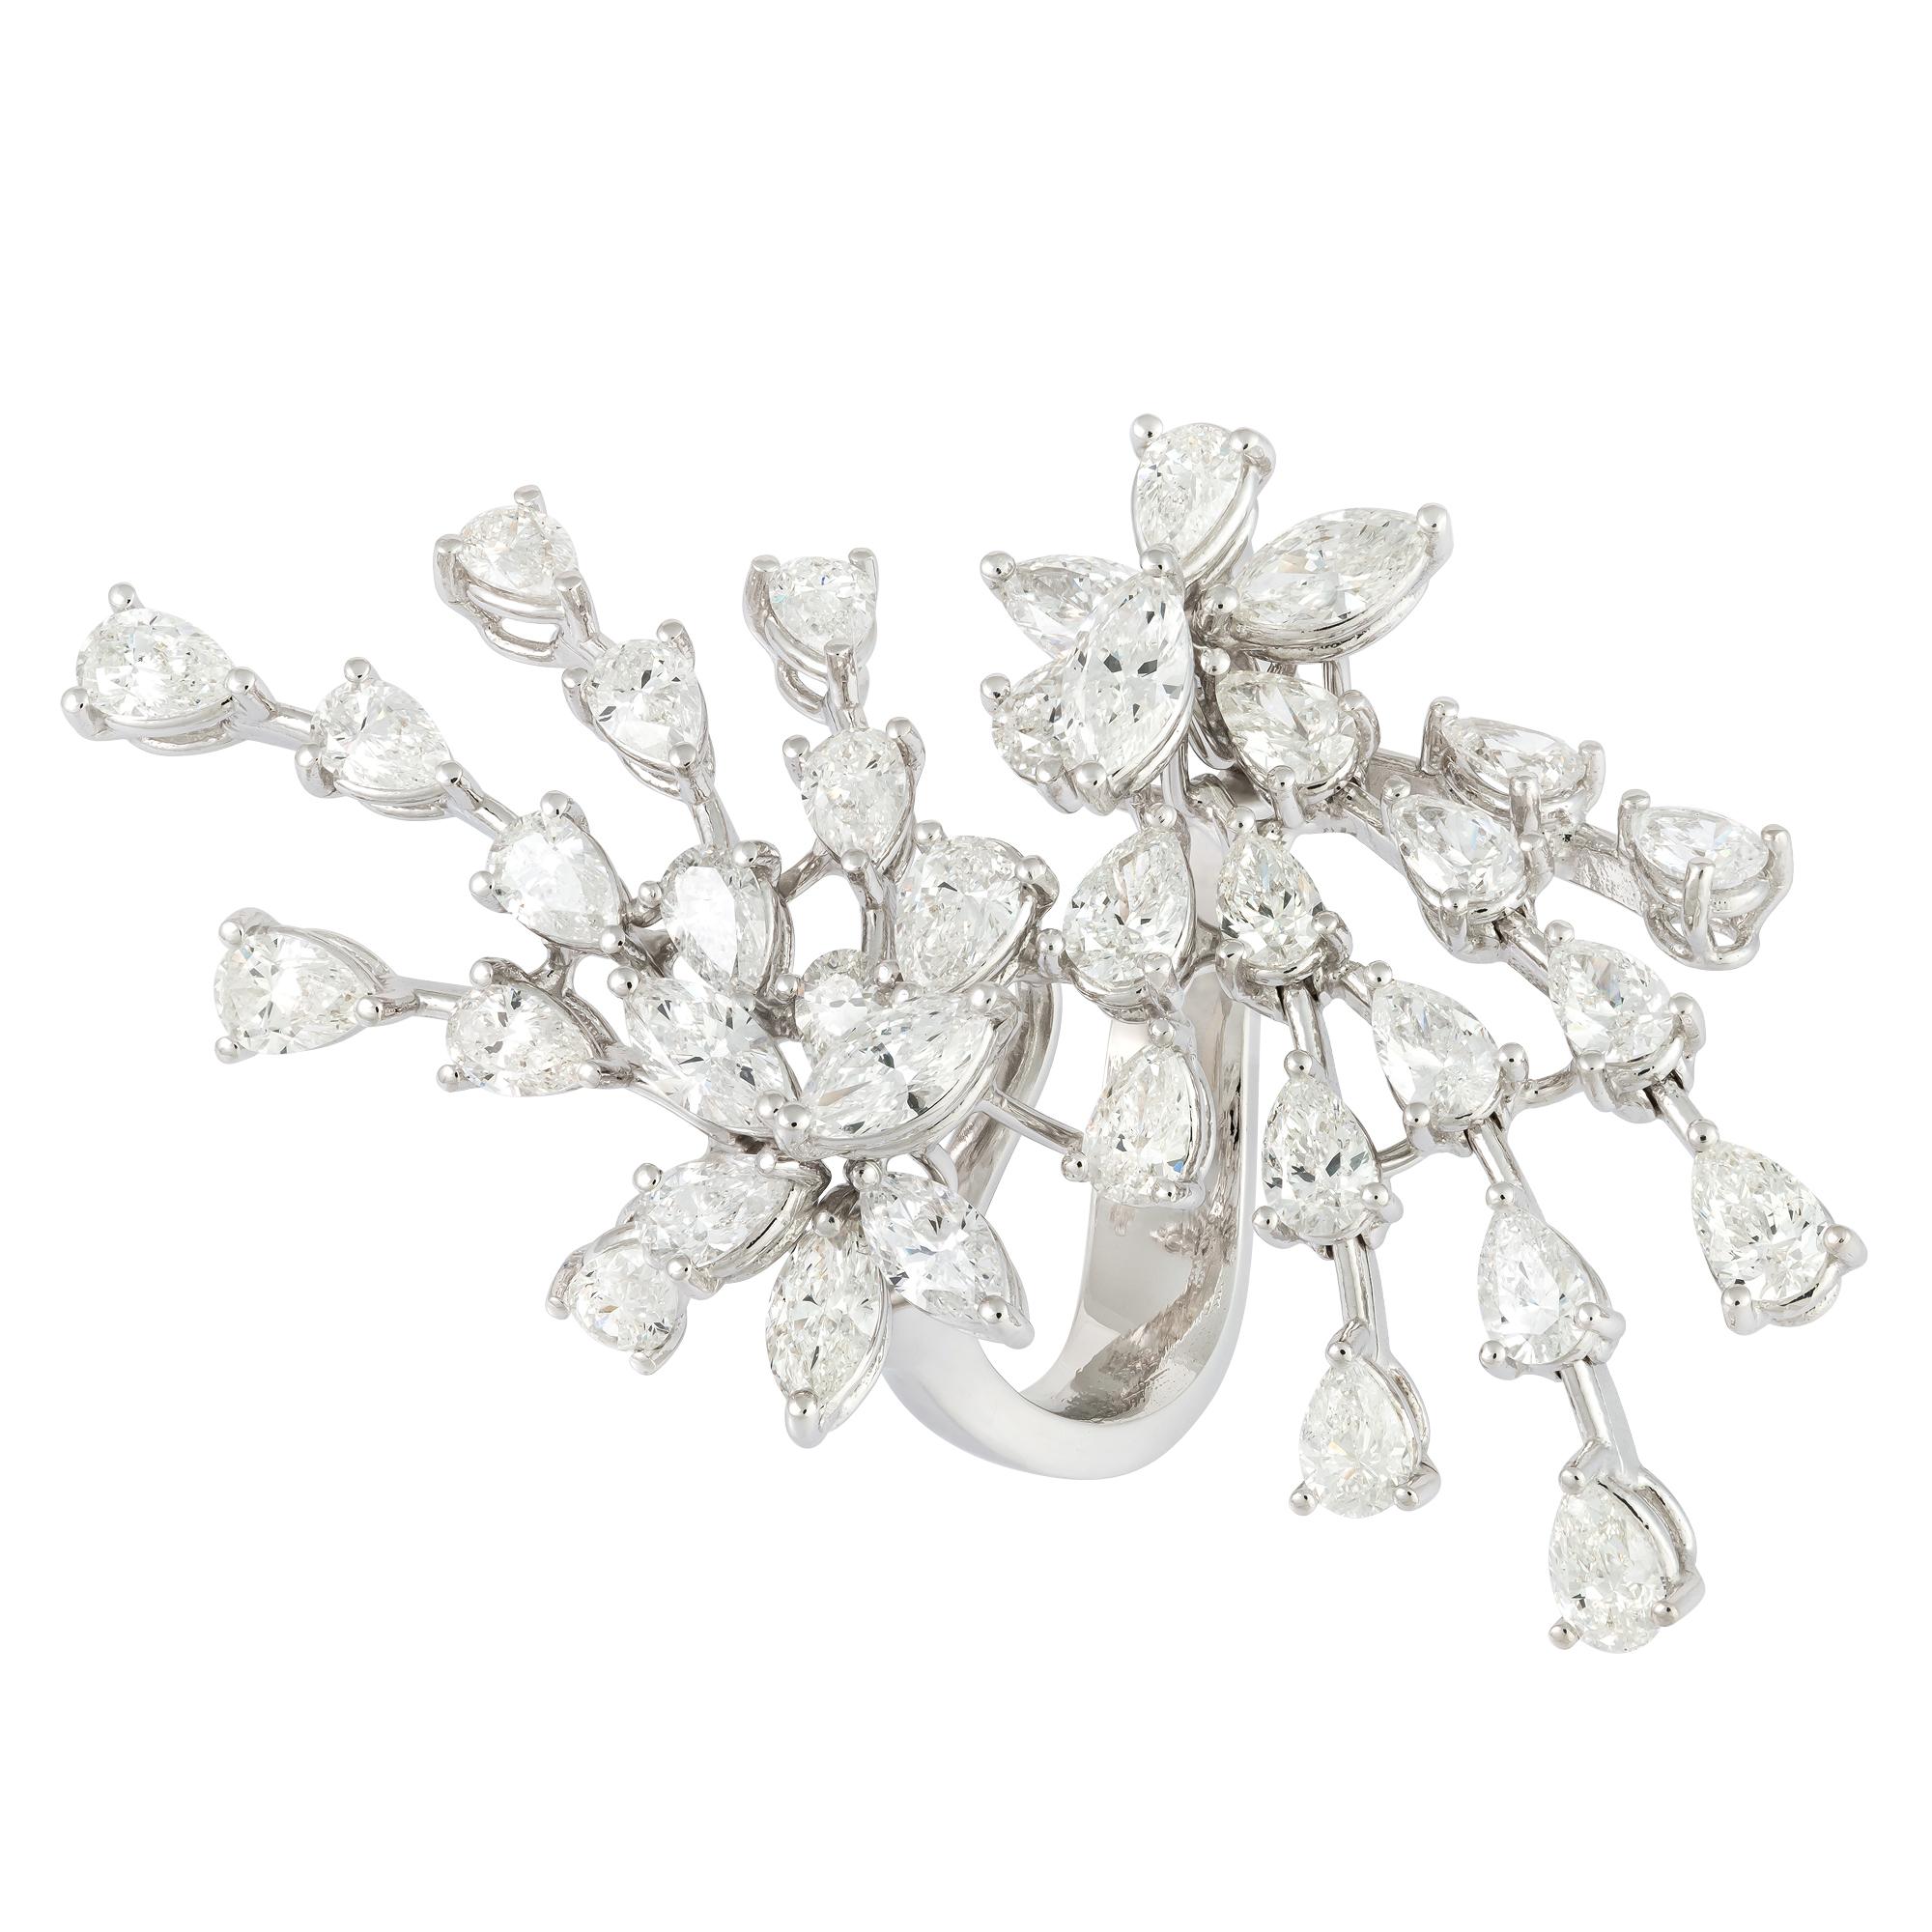 For Sale:  Sparkling White 18K Gold White Diamond Ring for Her 4